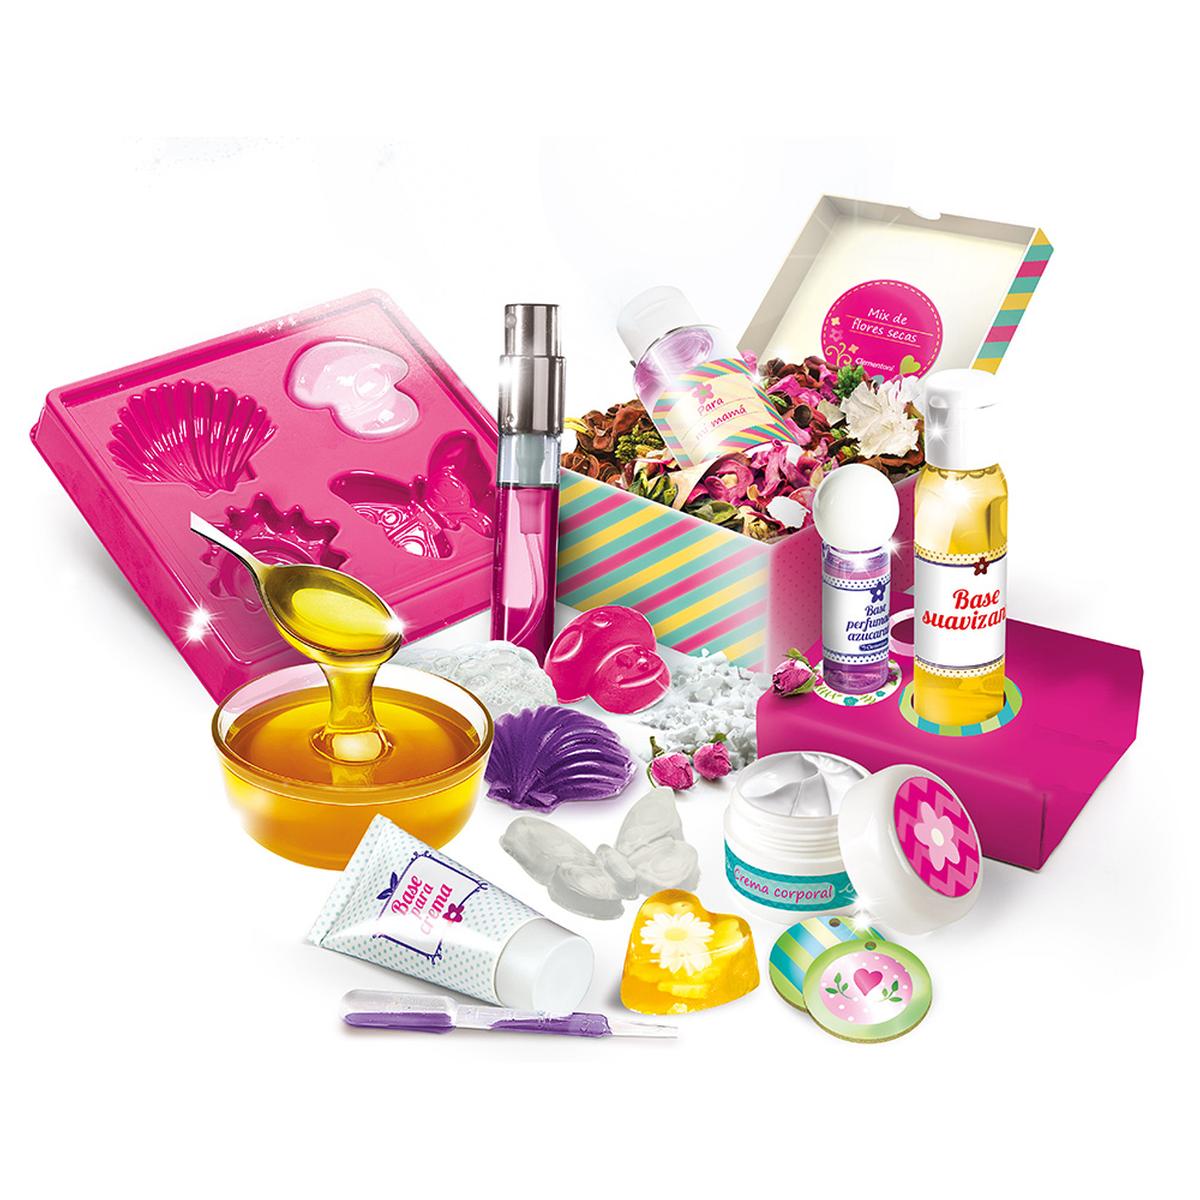 Laboratorio de Perfumes y Cosmeticos | Clementoni Ciencia | Toys"R"Us España